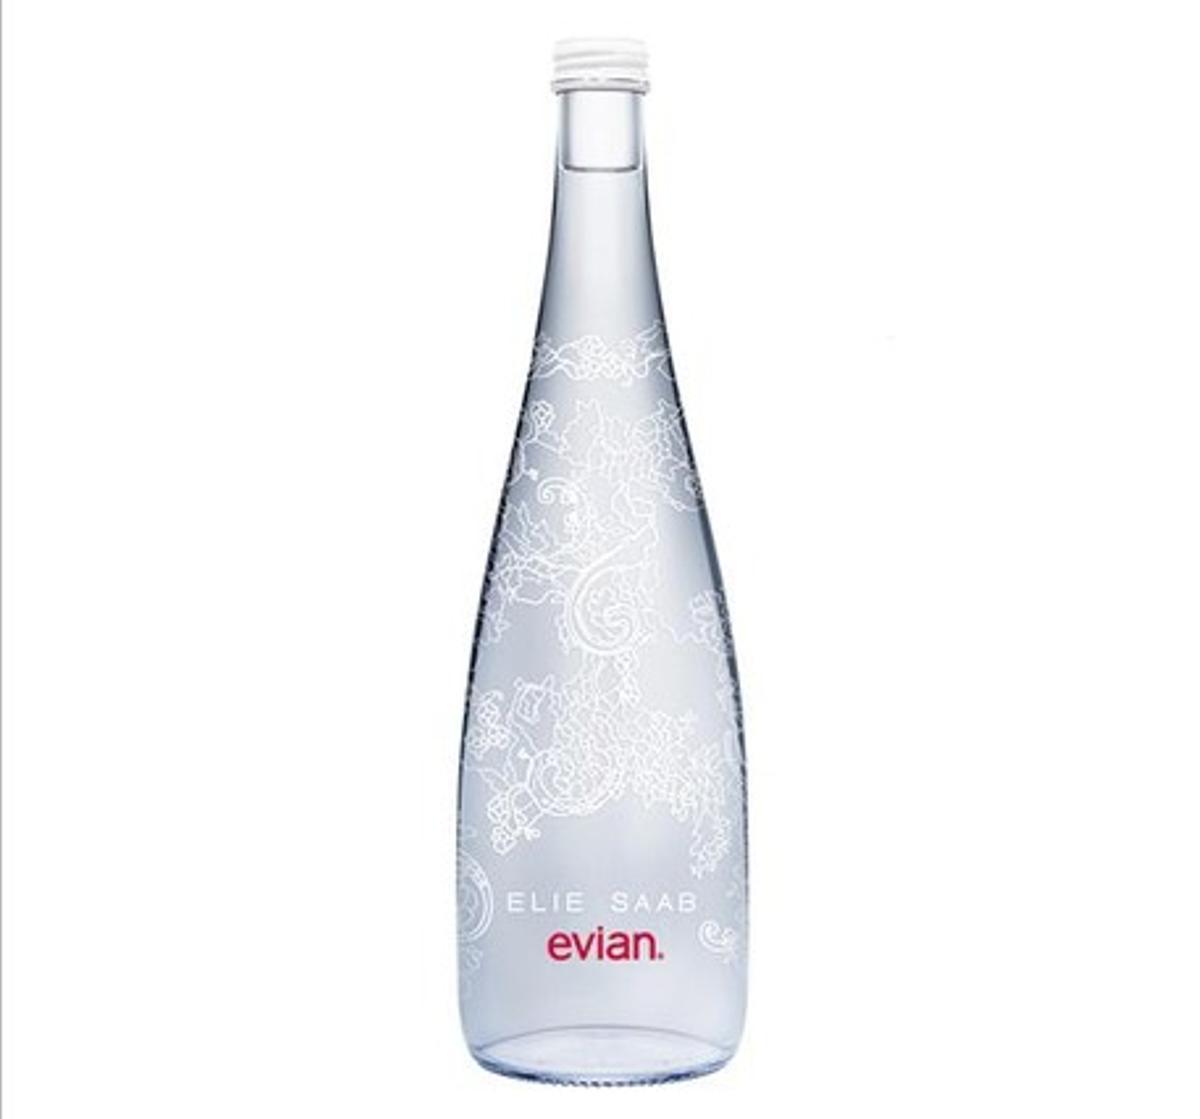 El disseny que ha fet el dissenyador Elie Saab per a l’ampolla d’aigua mineral Evian.